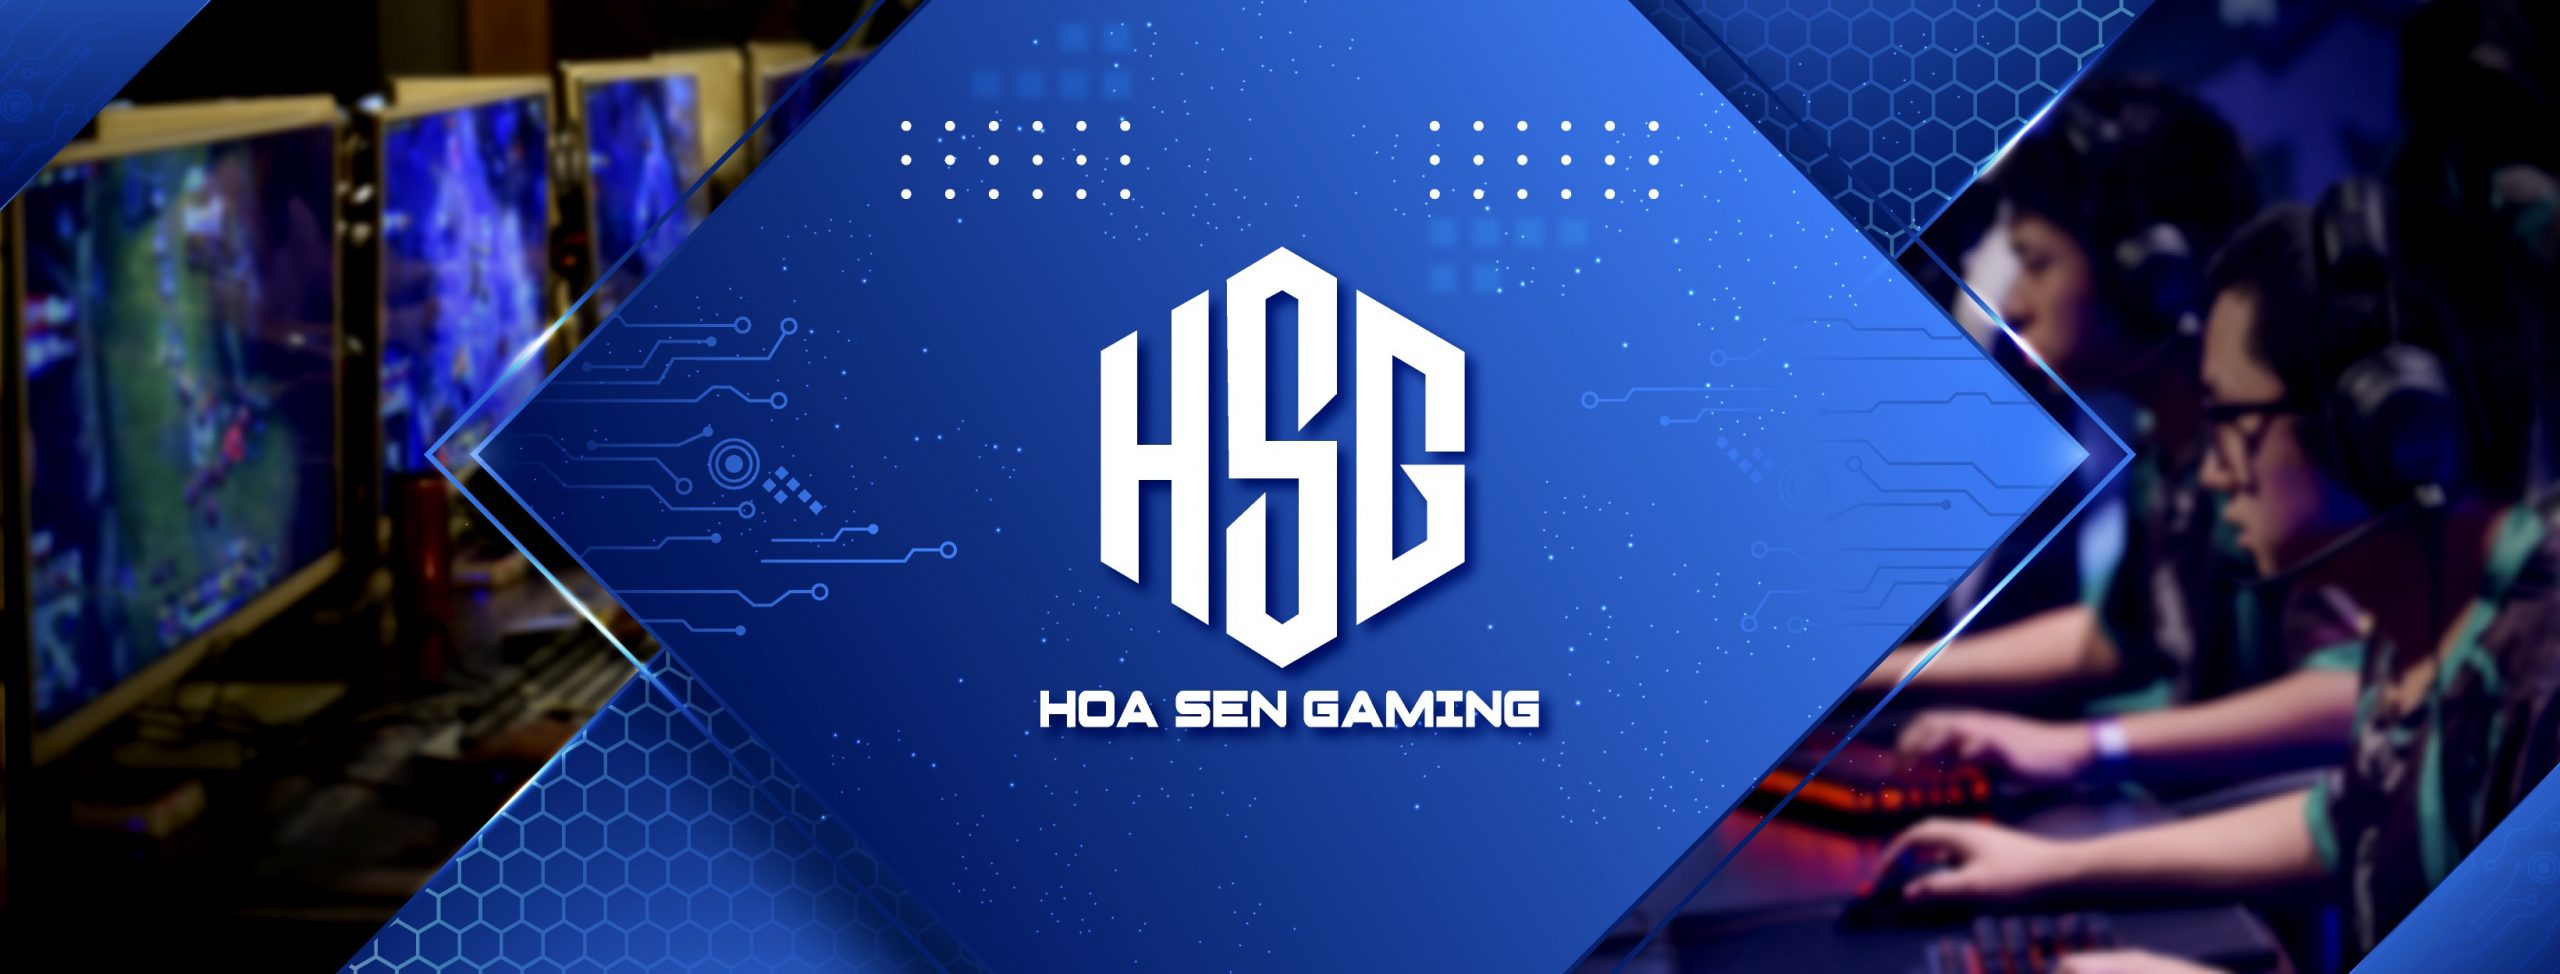 CLB Hoa Sen Gaming